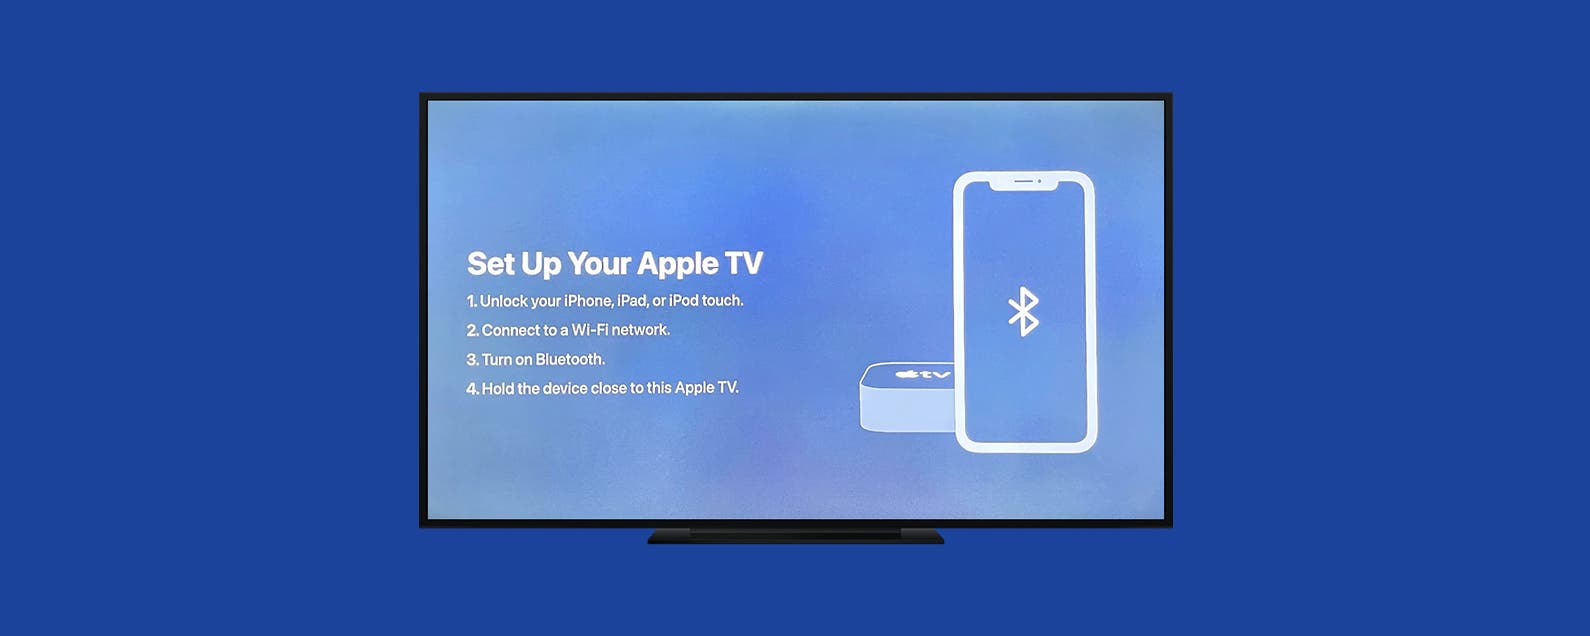 Overfladisk Ordinere kredsløb How to Set Up Apple TV